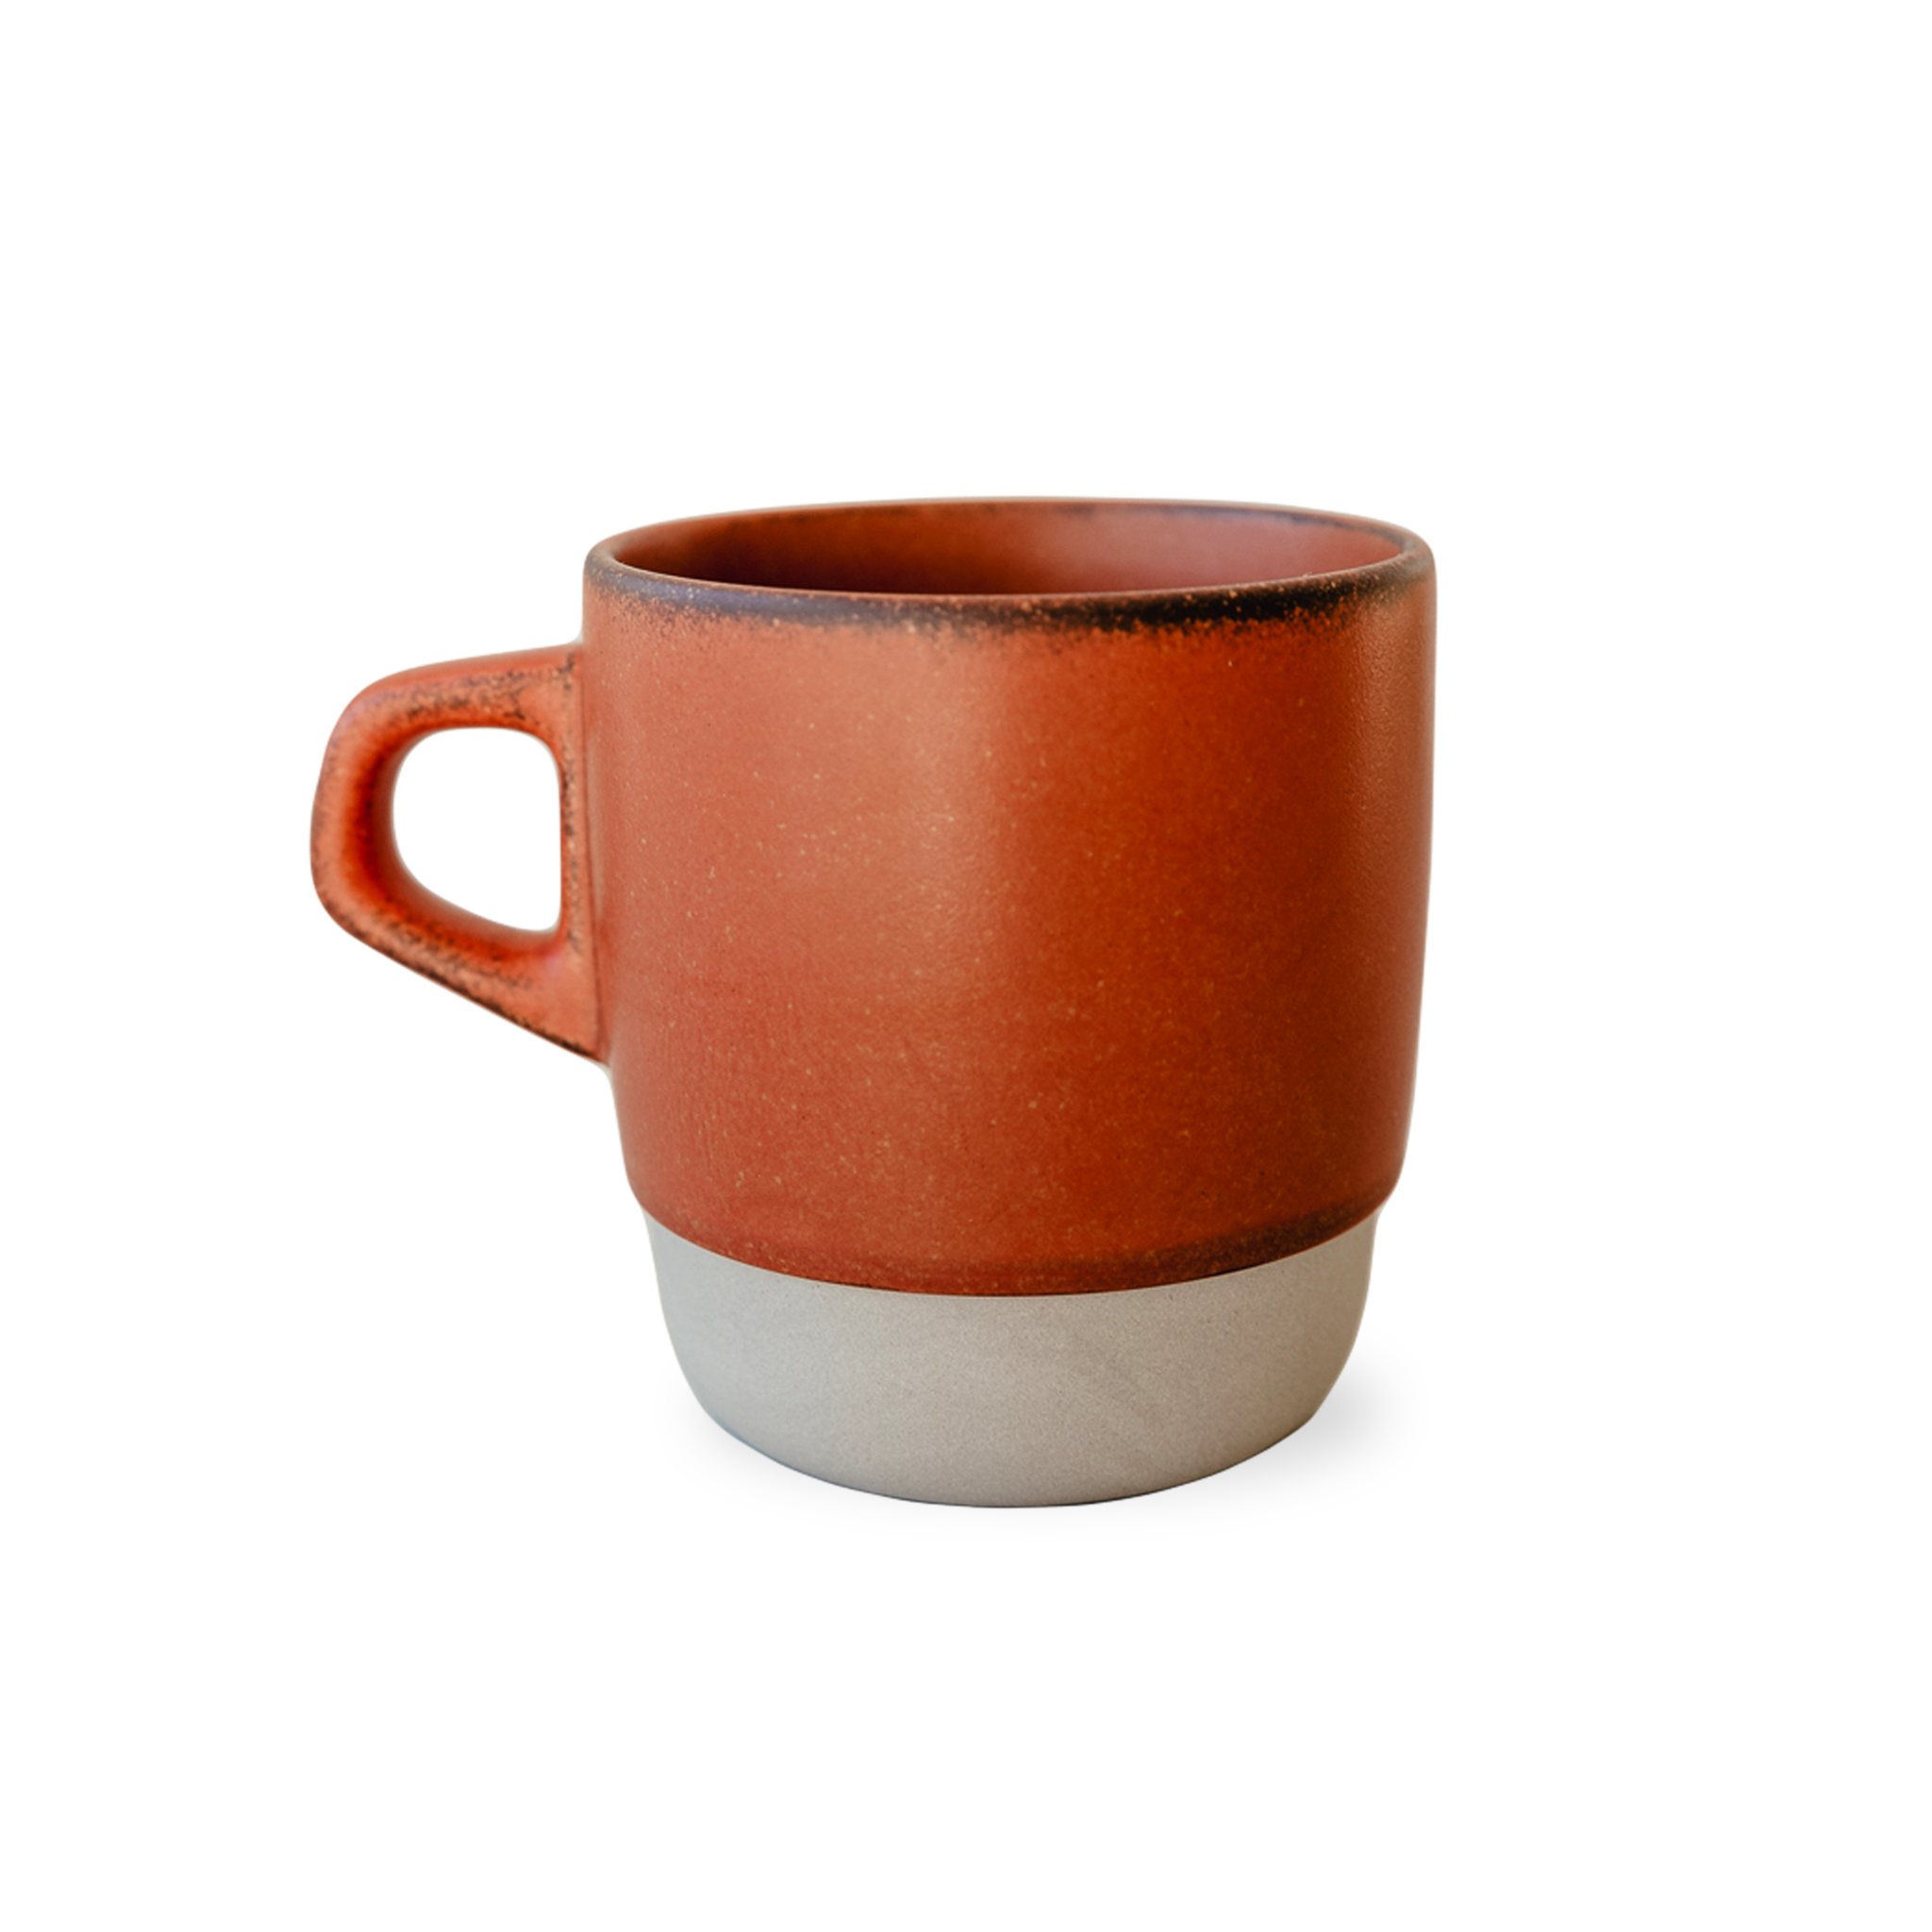 Rust Kinto mug